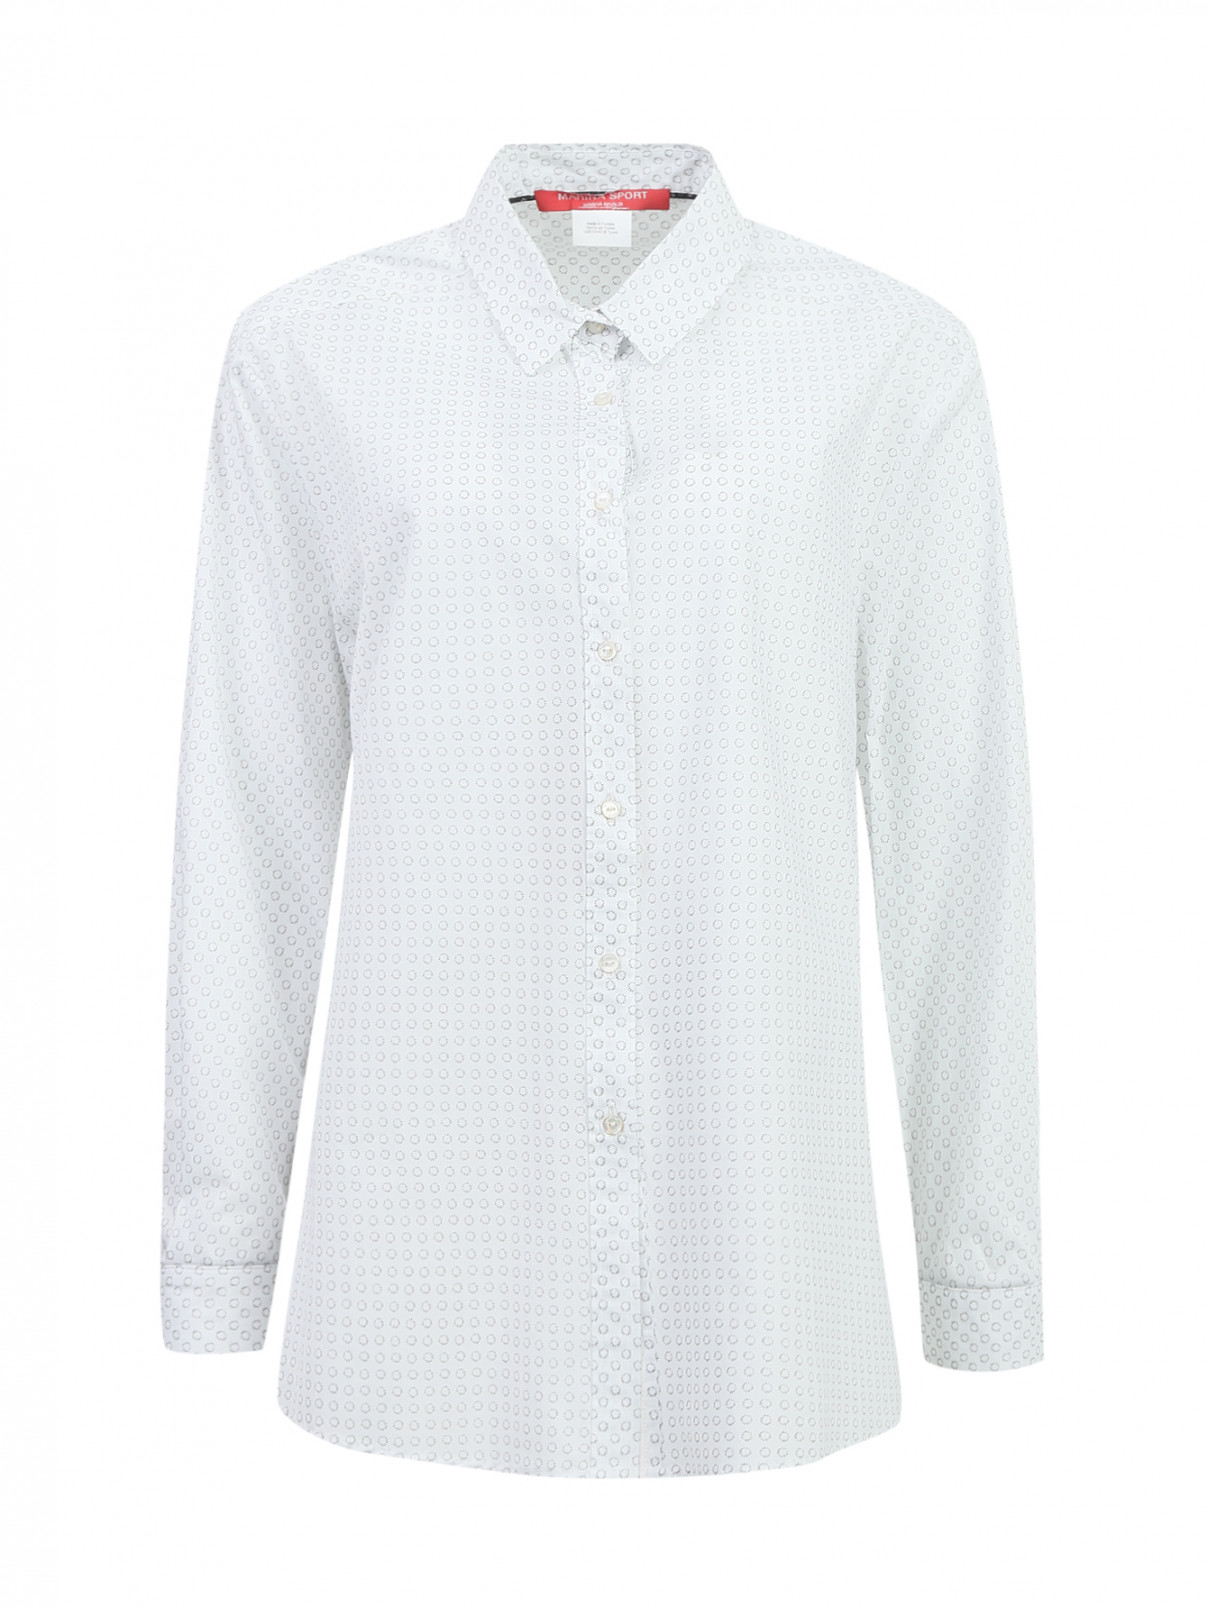 Рубашка из хлопка с узором Marina Sport  –  Общий вид  – Цвет:  Узор